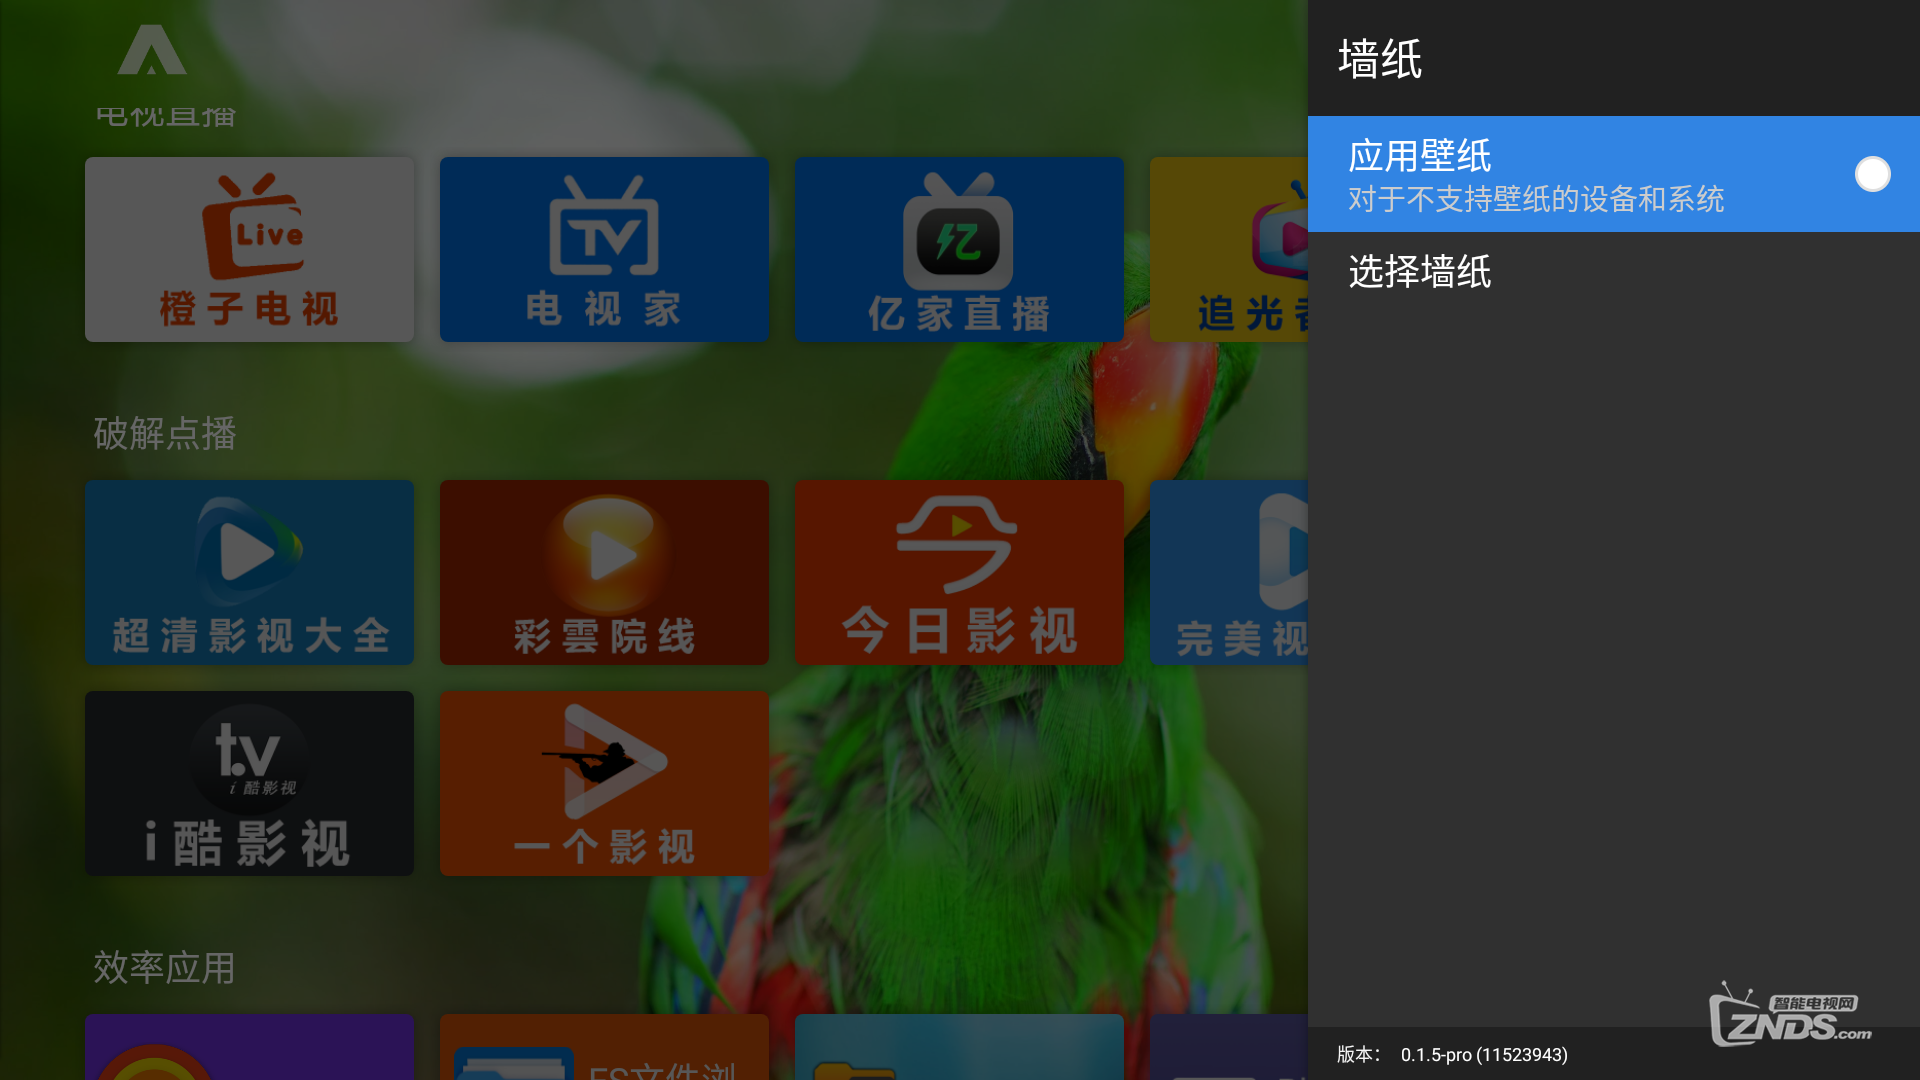 安卓版appletv系统tvbox电视版app官网